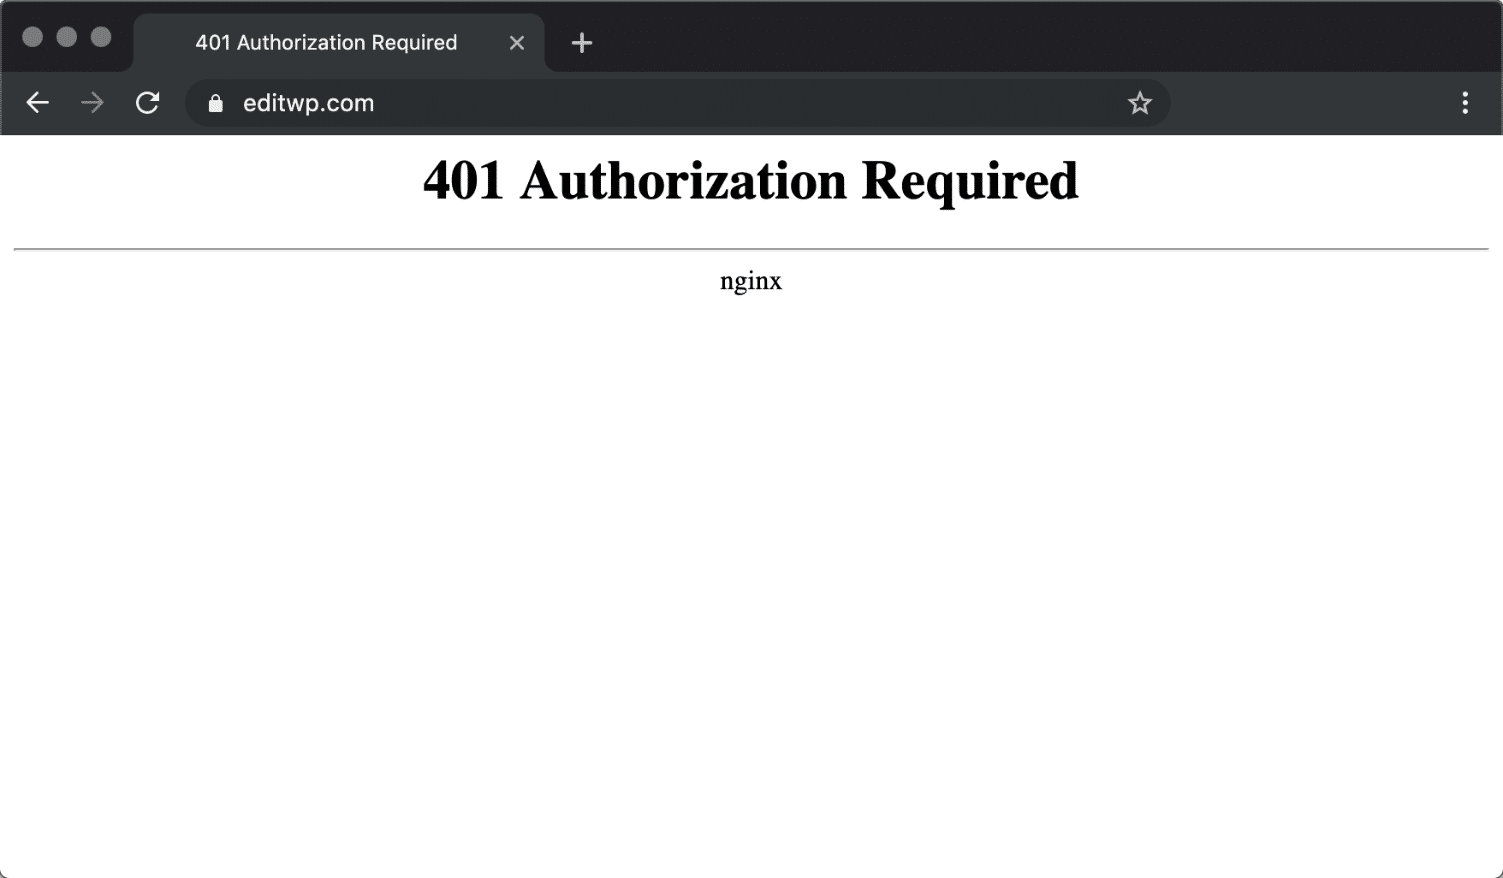 Chromeの「Nginx 401 Authorization Required」メッセージ